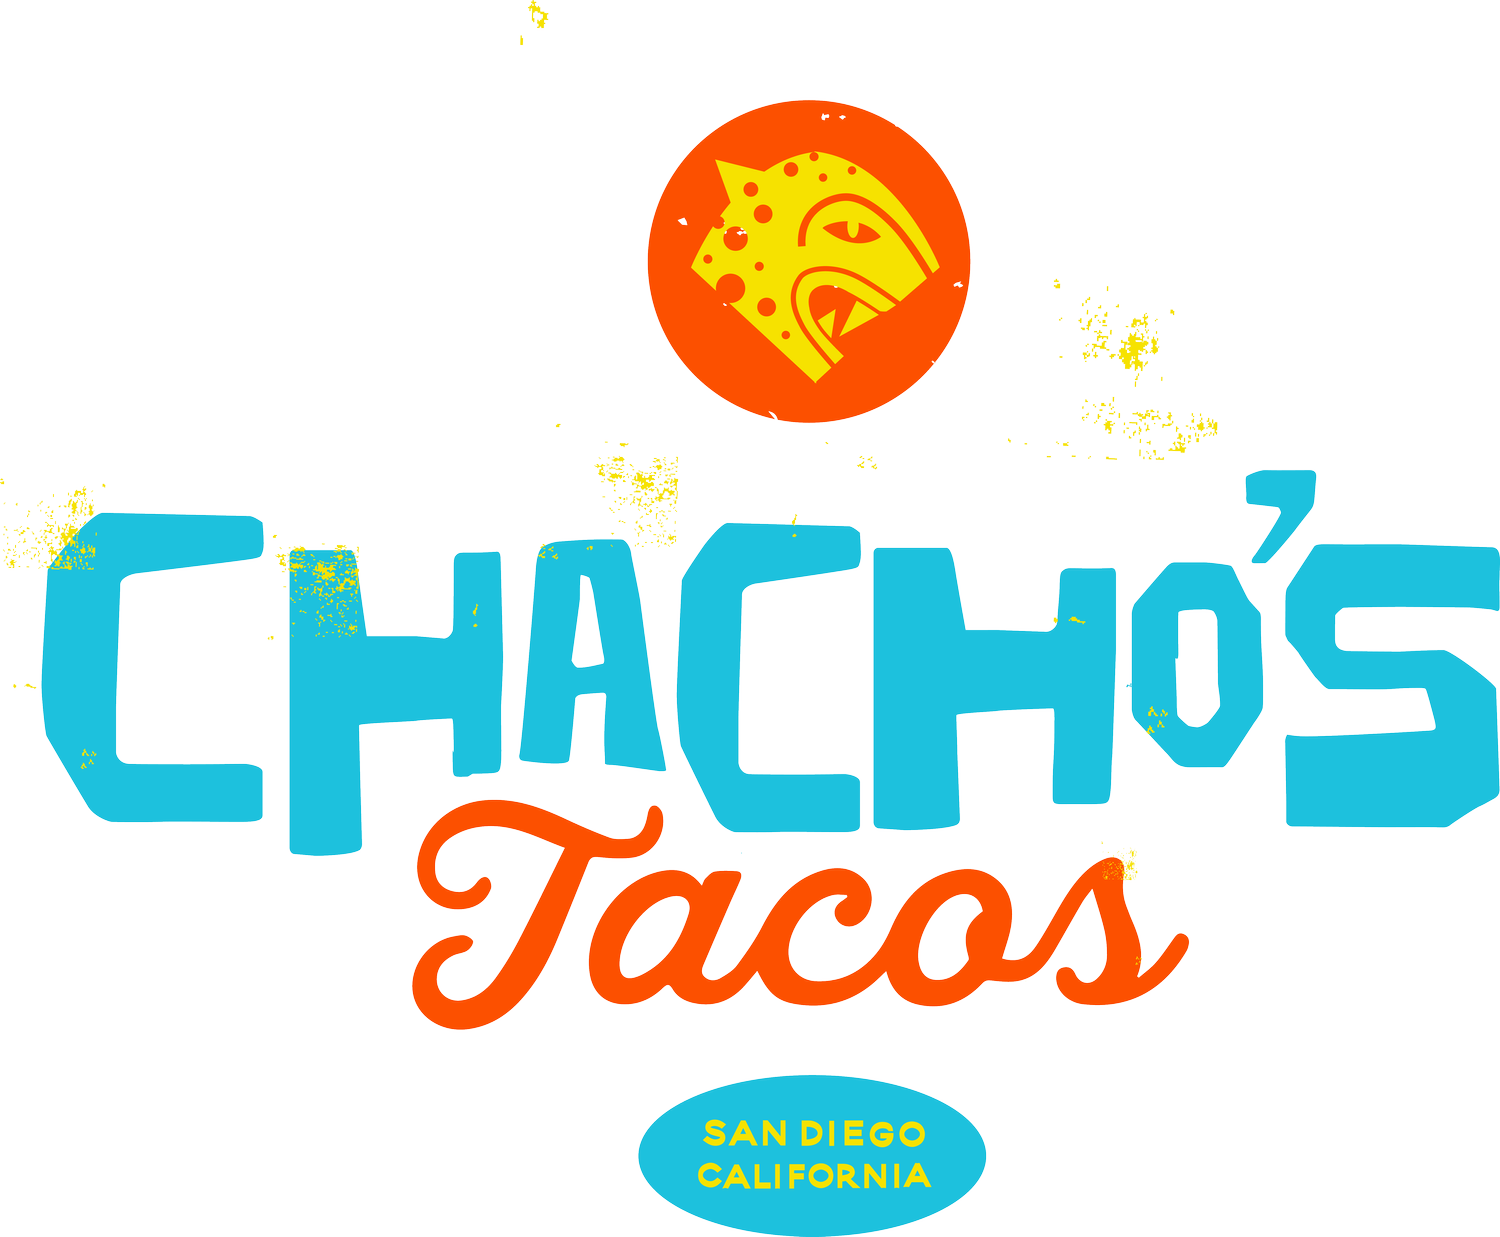 Chachos Tacos